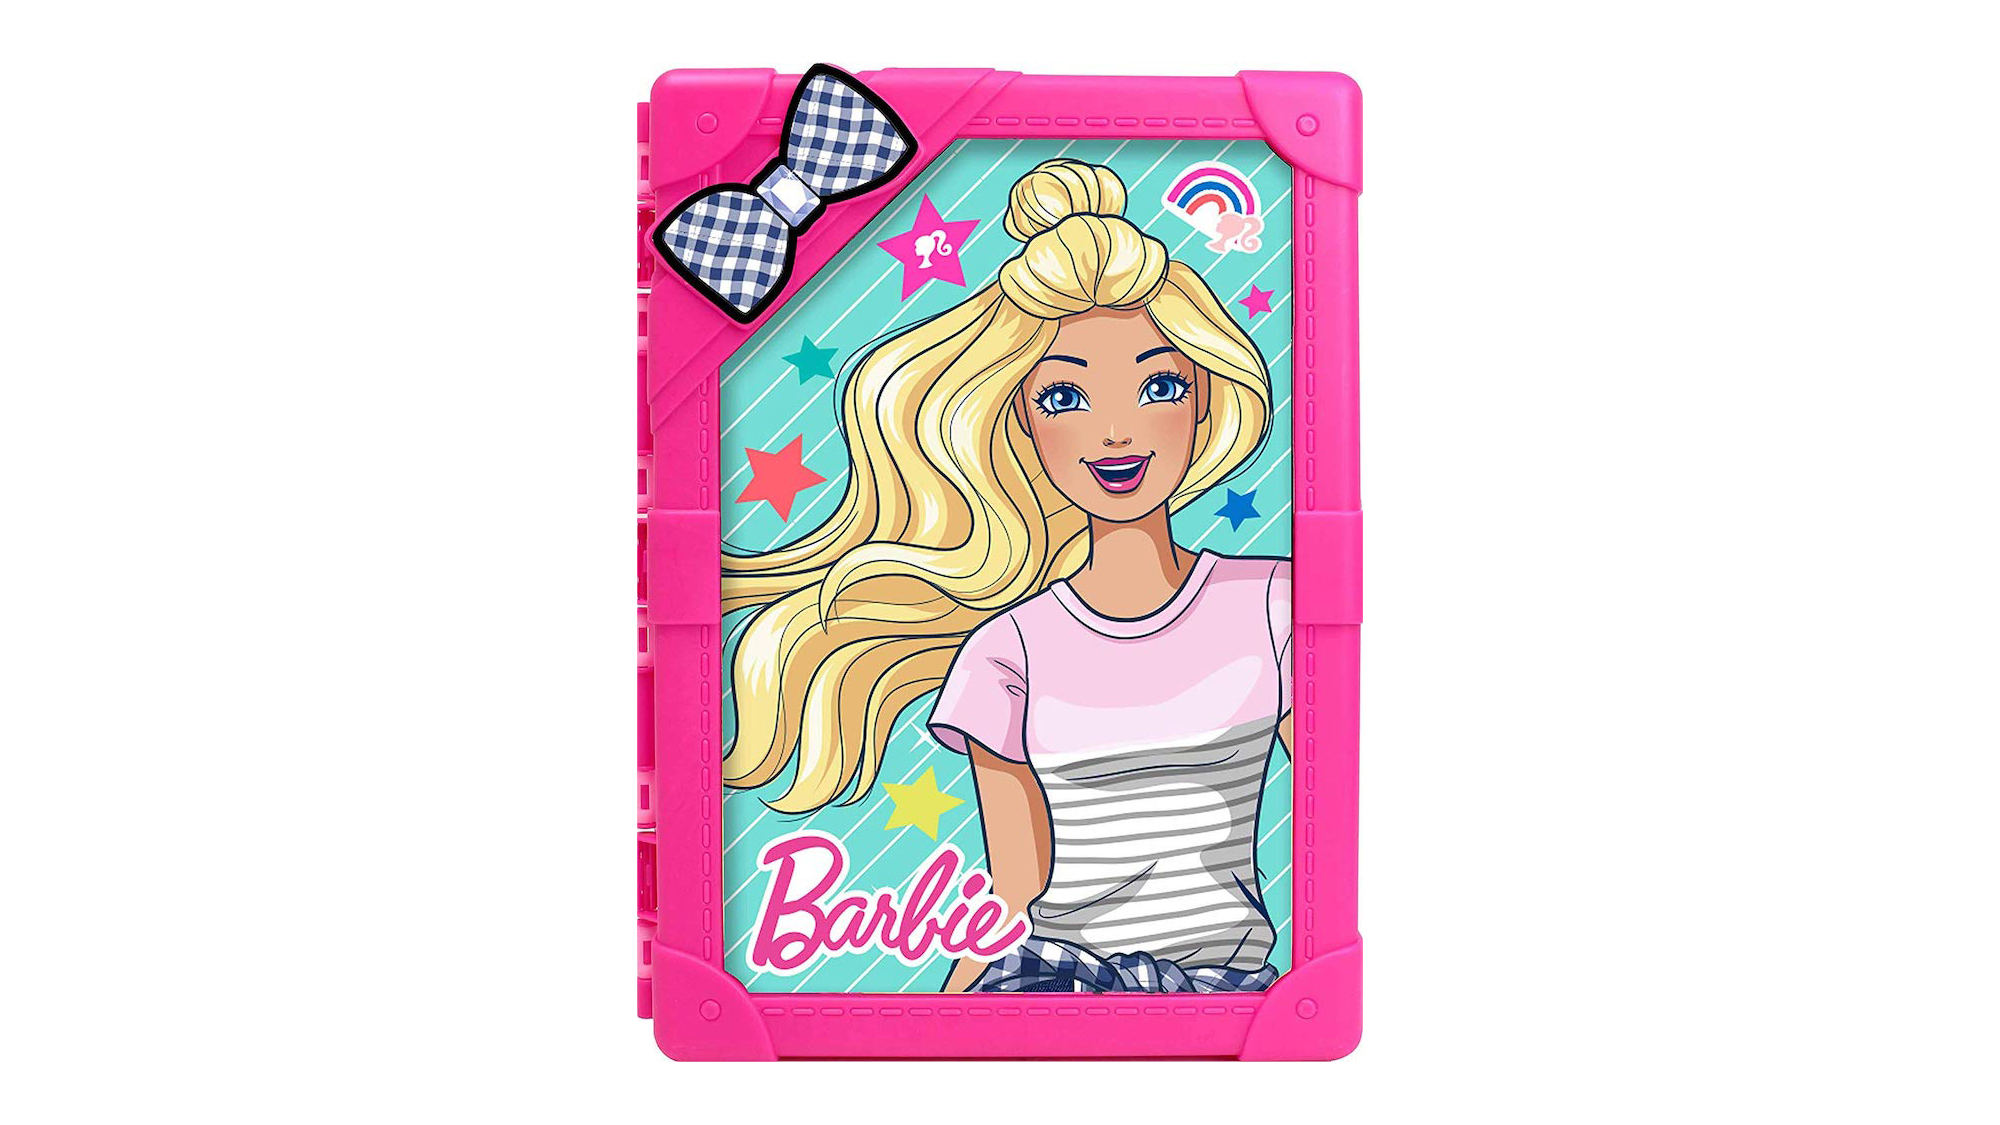 barbie doll storage